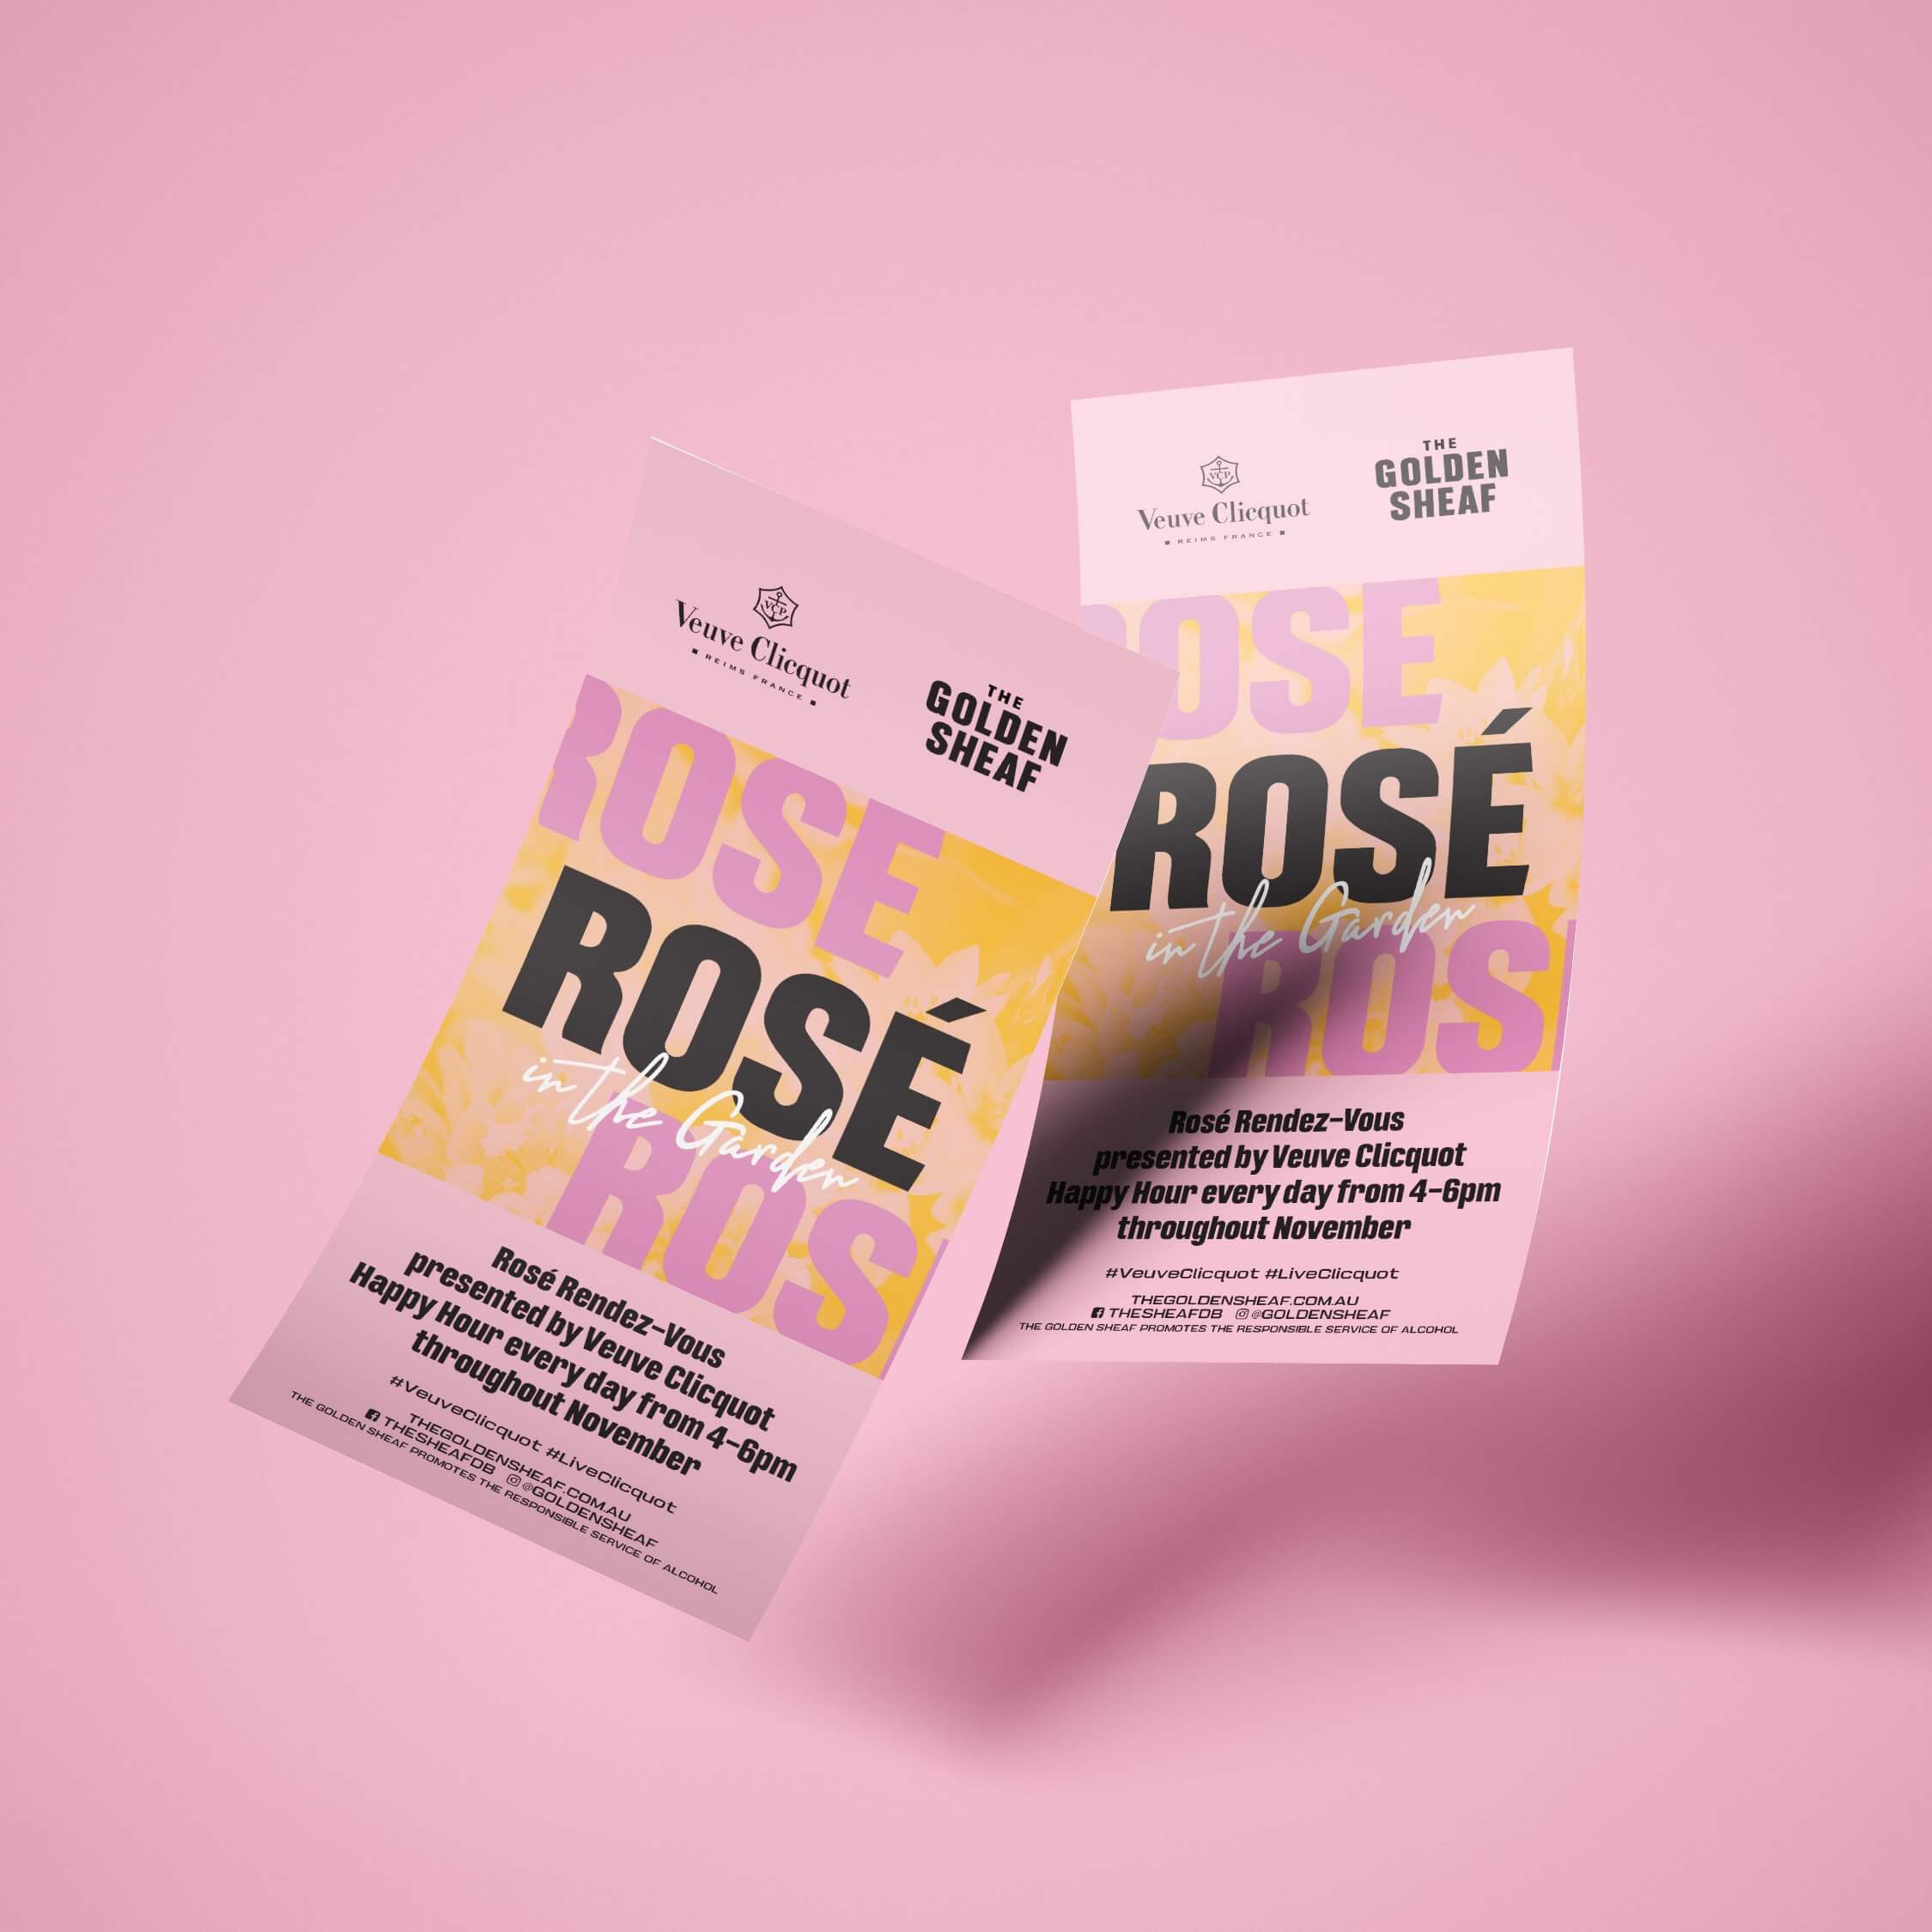 Distil golden sheaf double bay rose in the garden flyer design